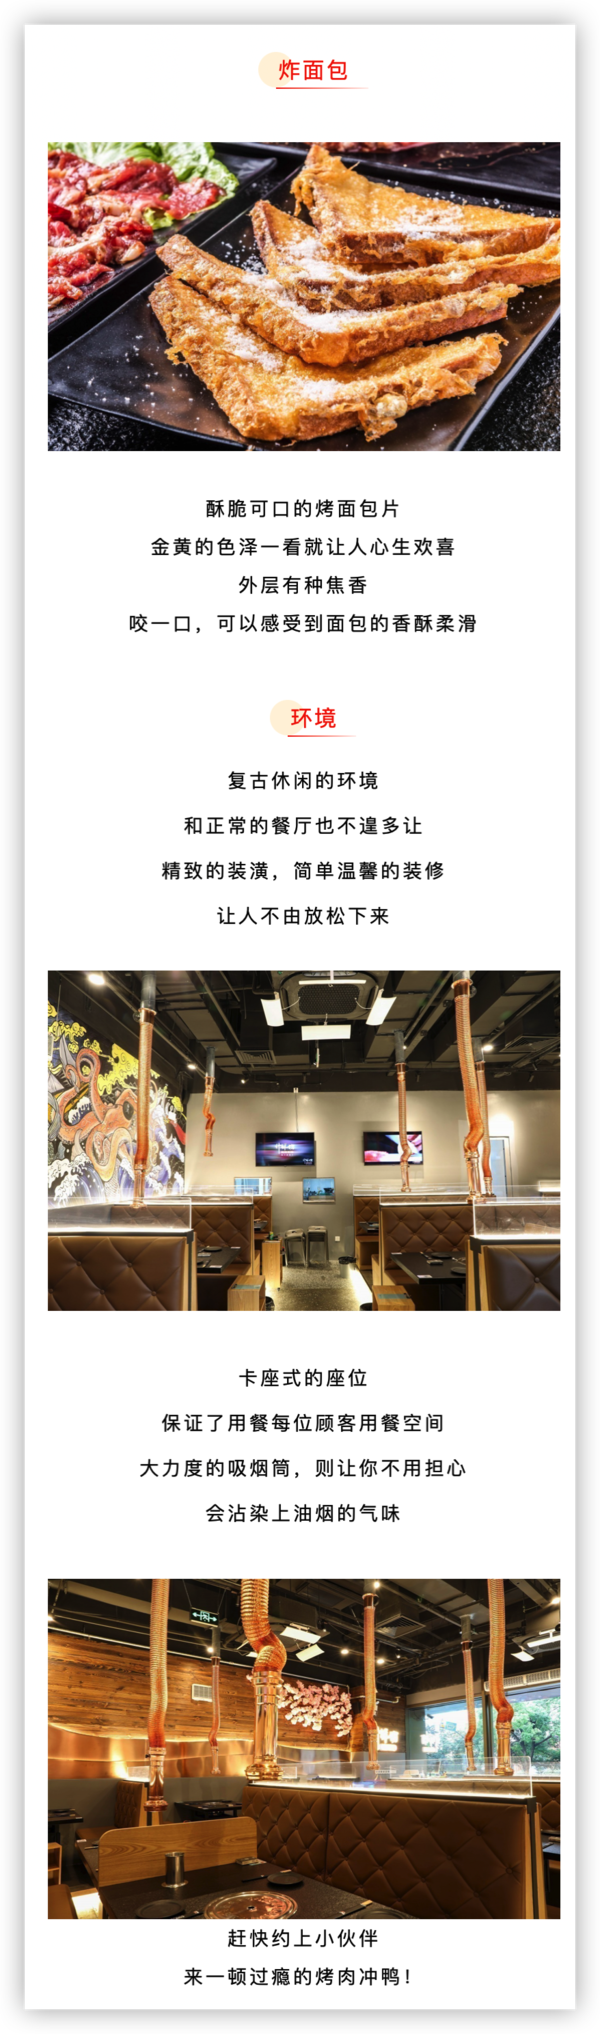 上海爱琴海店 什鲜坊·东北海鲜烤肉4人套餐